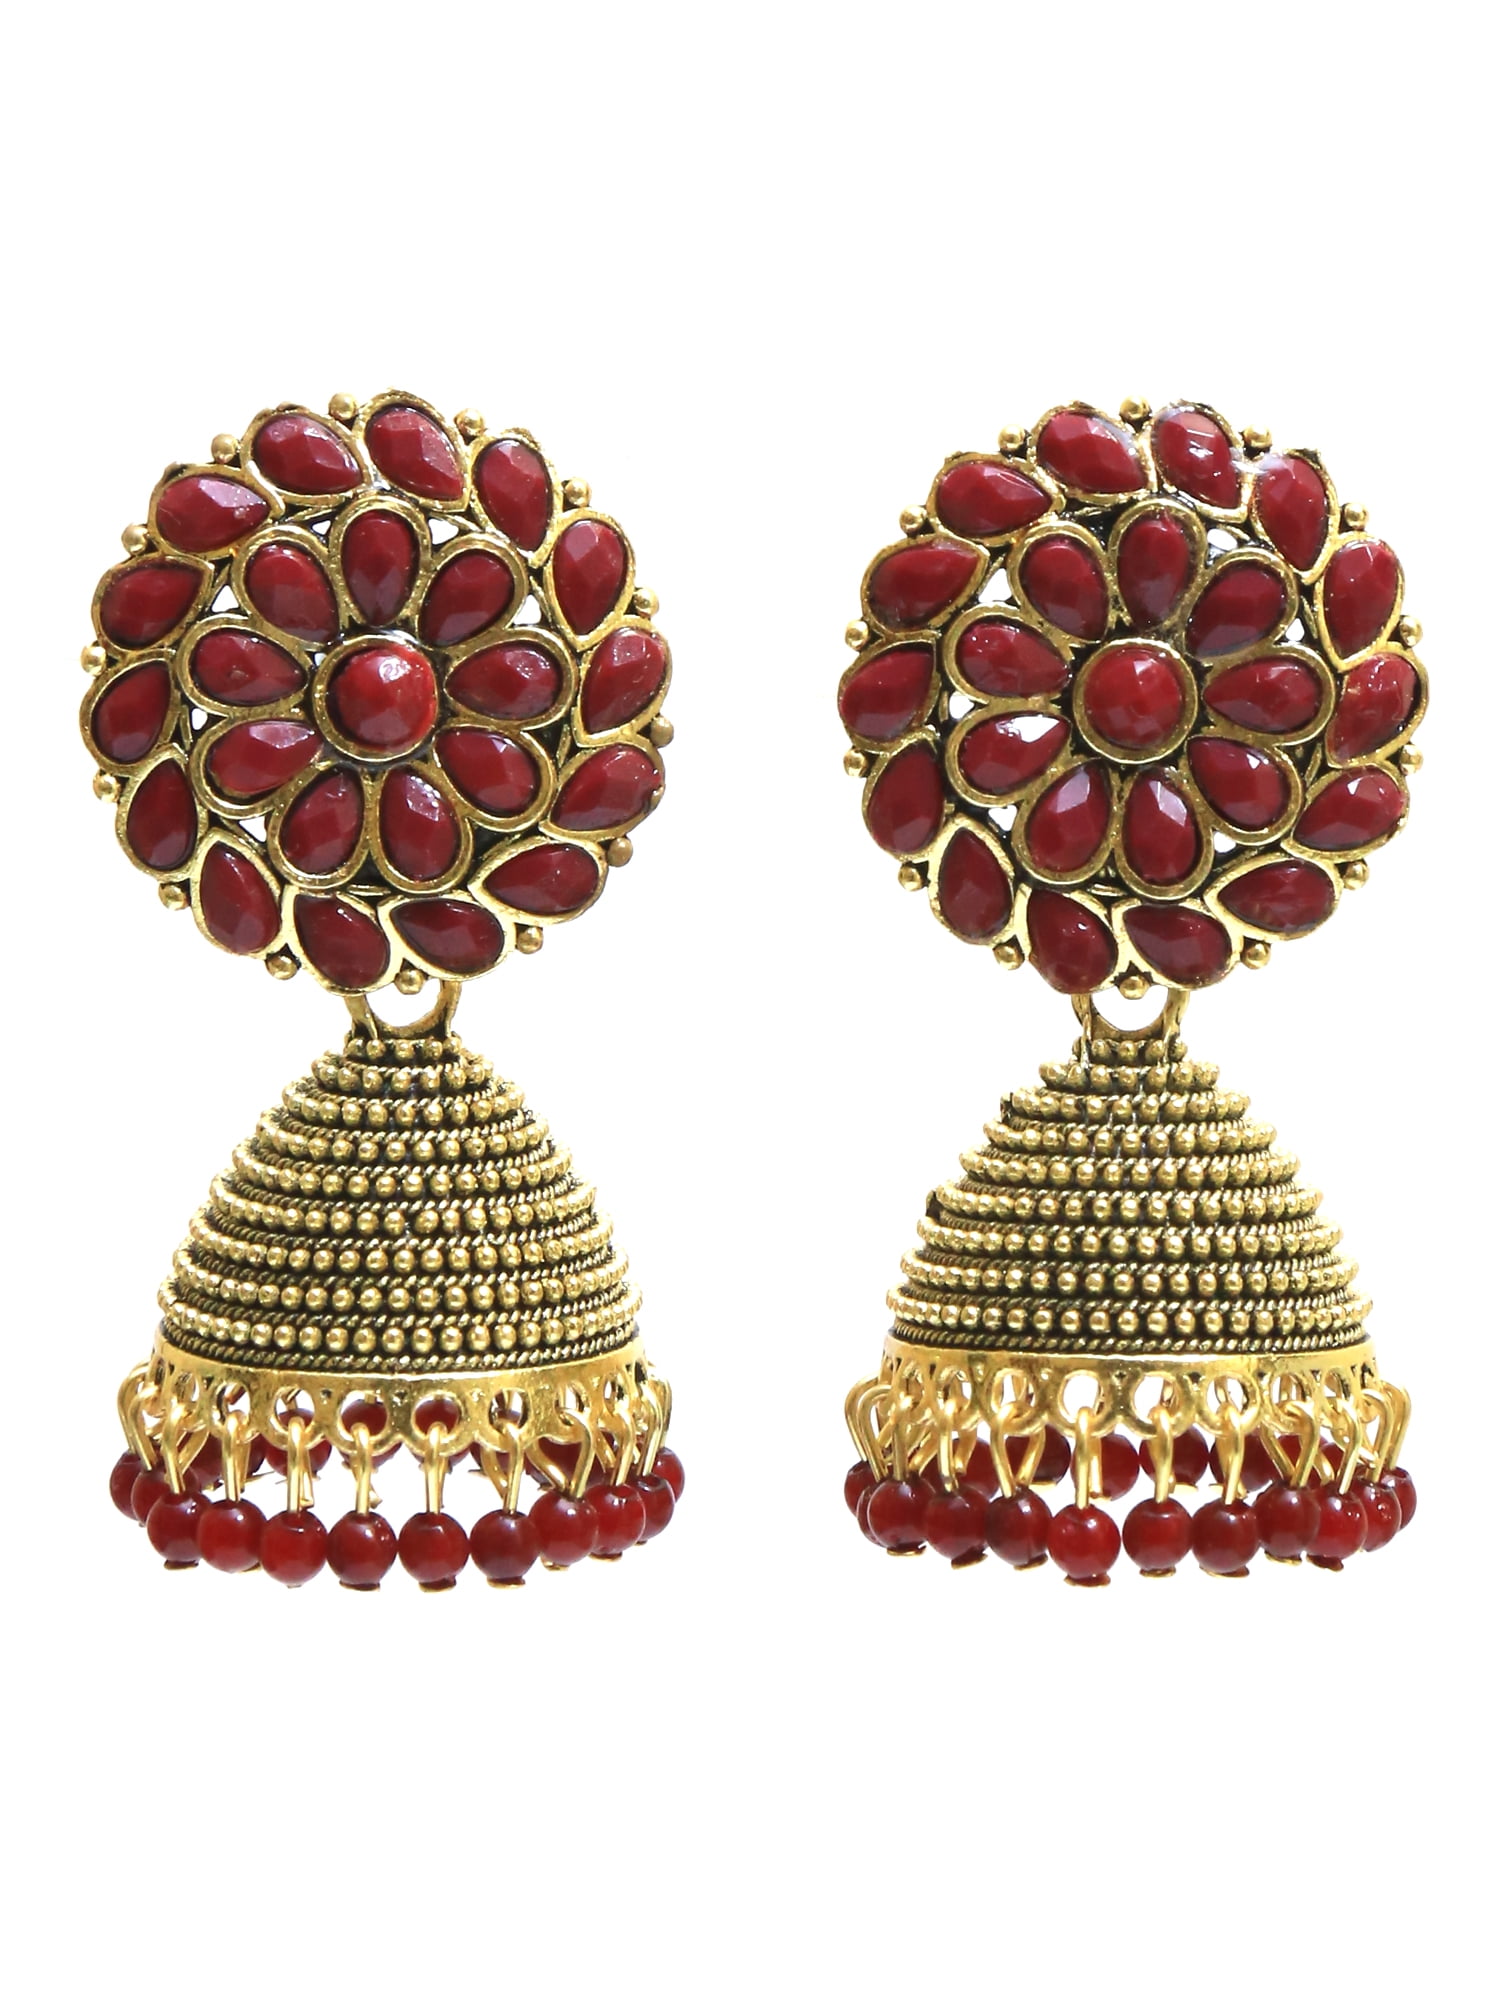 Handmade Beaded | Earrings| Haldi Mehndi Jewellery Sets